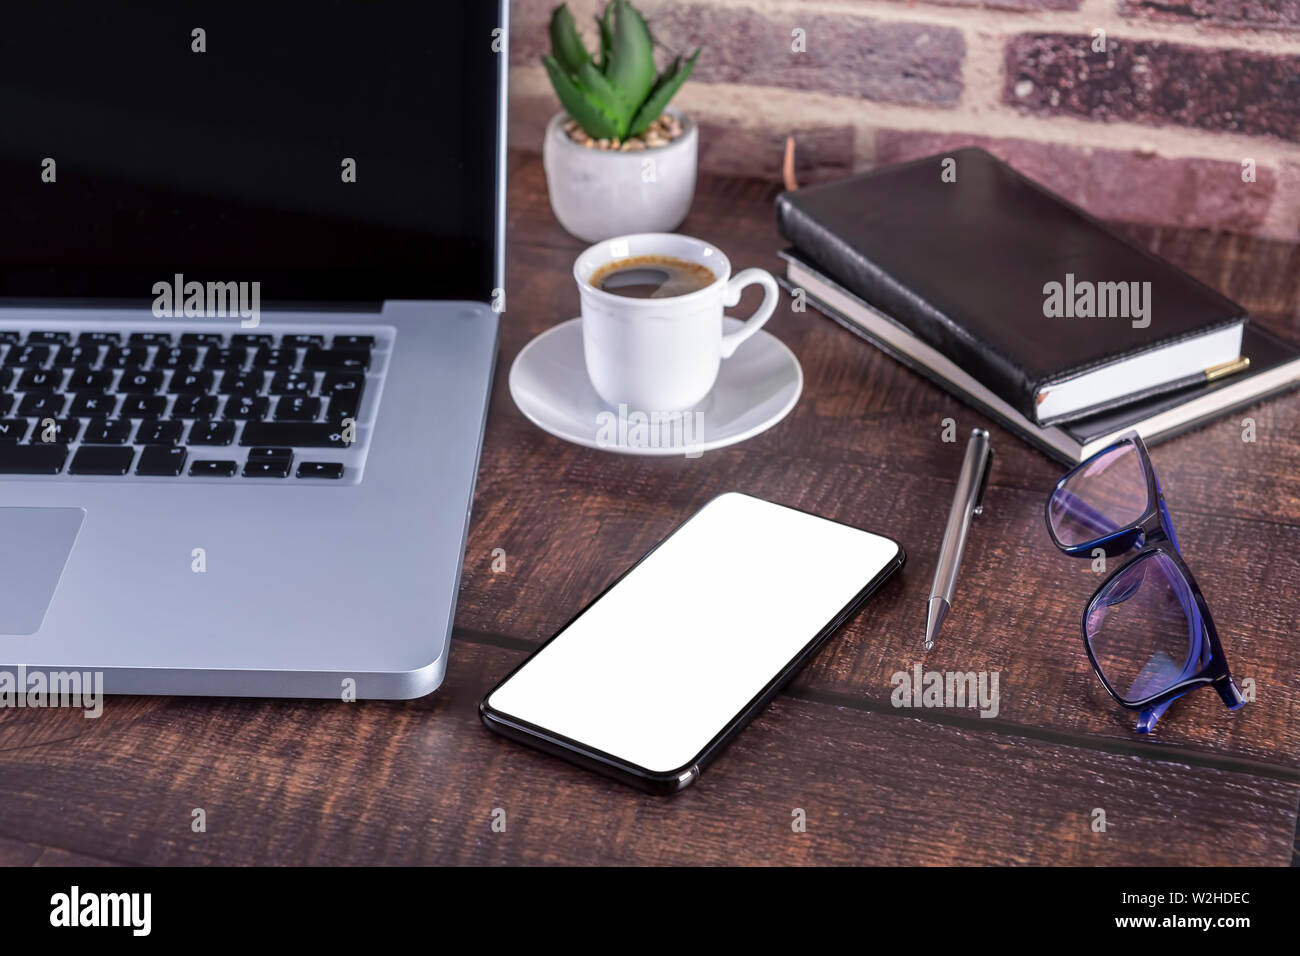 Portátil con pantalla en blanco y una taza de café y el bloc de notas y lápiz Libros y teléfonos inteligentes en la mesa de madera. Maqueta de mesa de madera con portátil wi Foto de stock